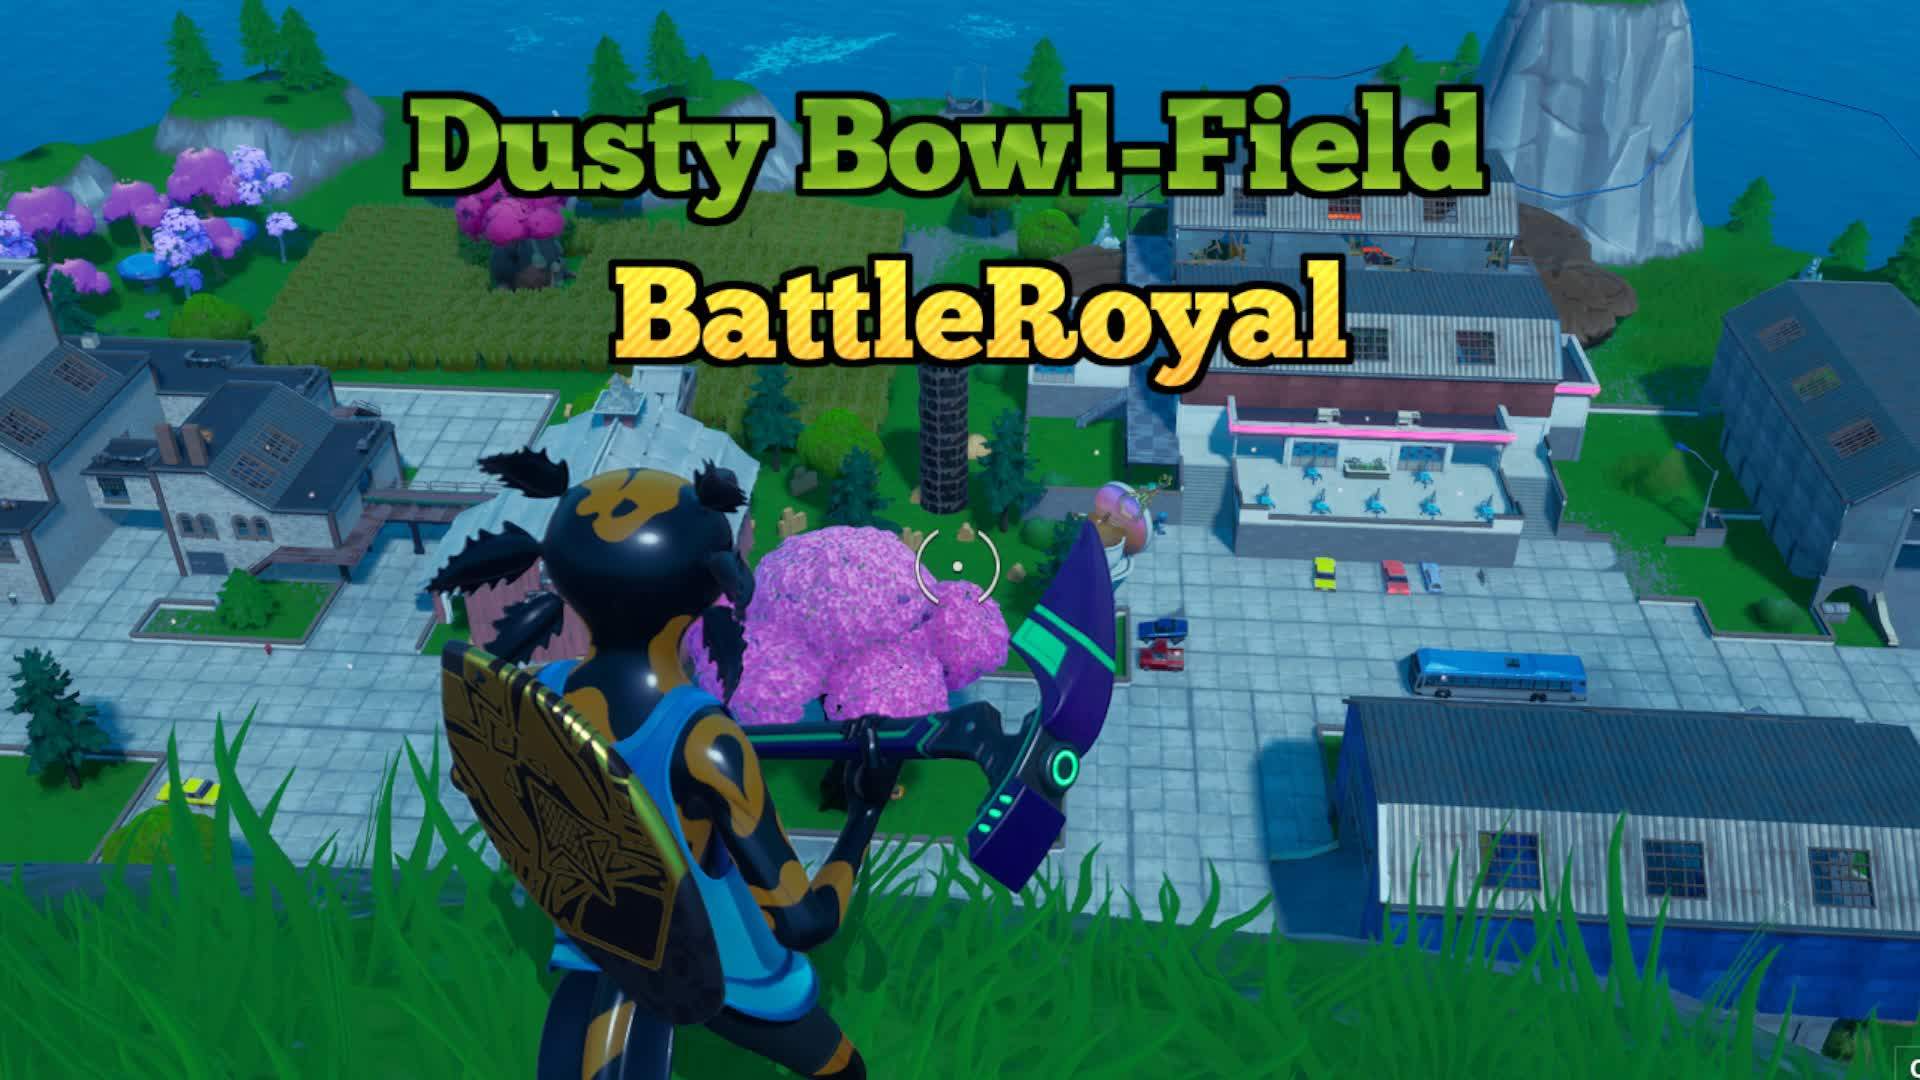 Dusty Bowl-Field | BattleRoyal